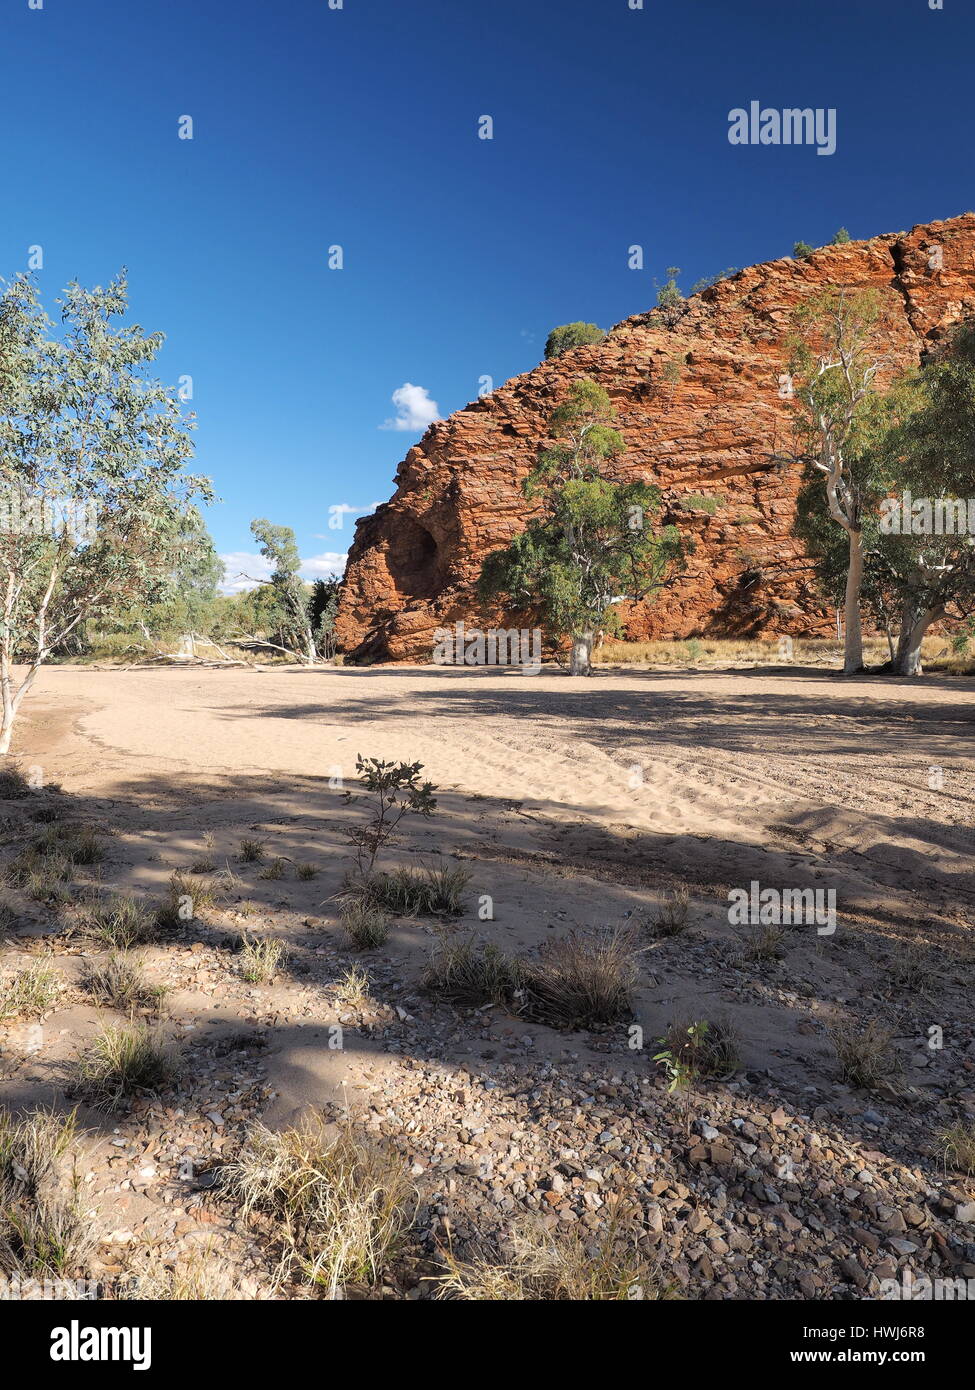 Fin de l'après-midi mur de roche illuminant dans la zone sèche de Simpsons Gap dans la chaîne des McDonnell Ranges près d'Alice Springs, en Australie, le 2015 juin Banque D'Images